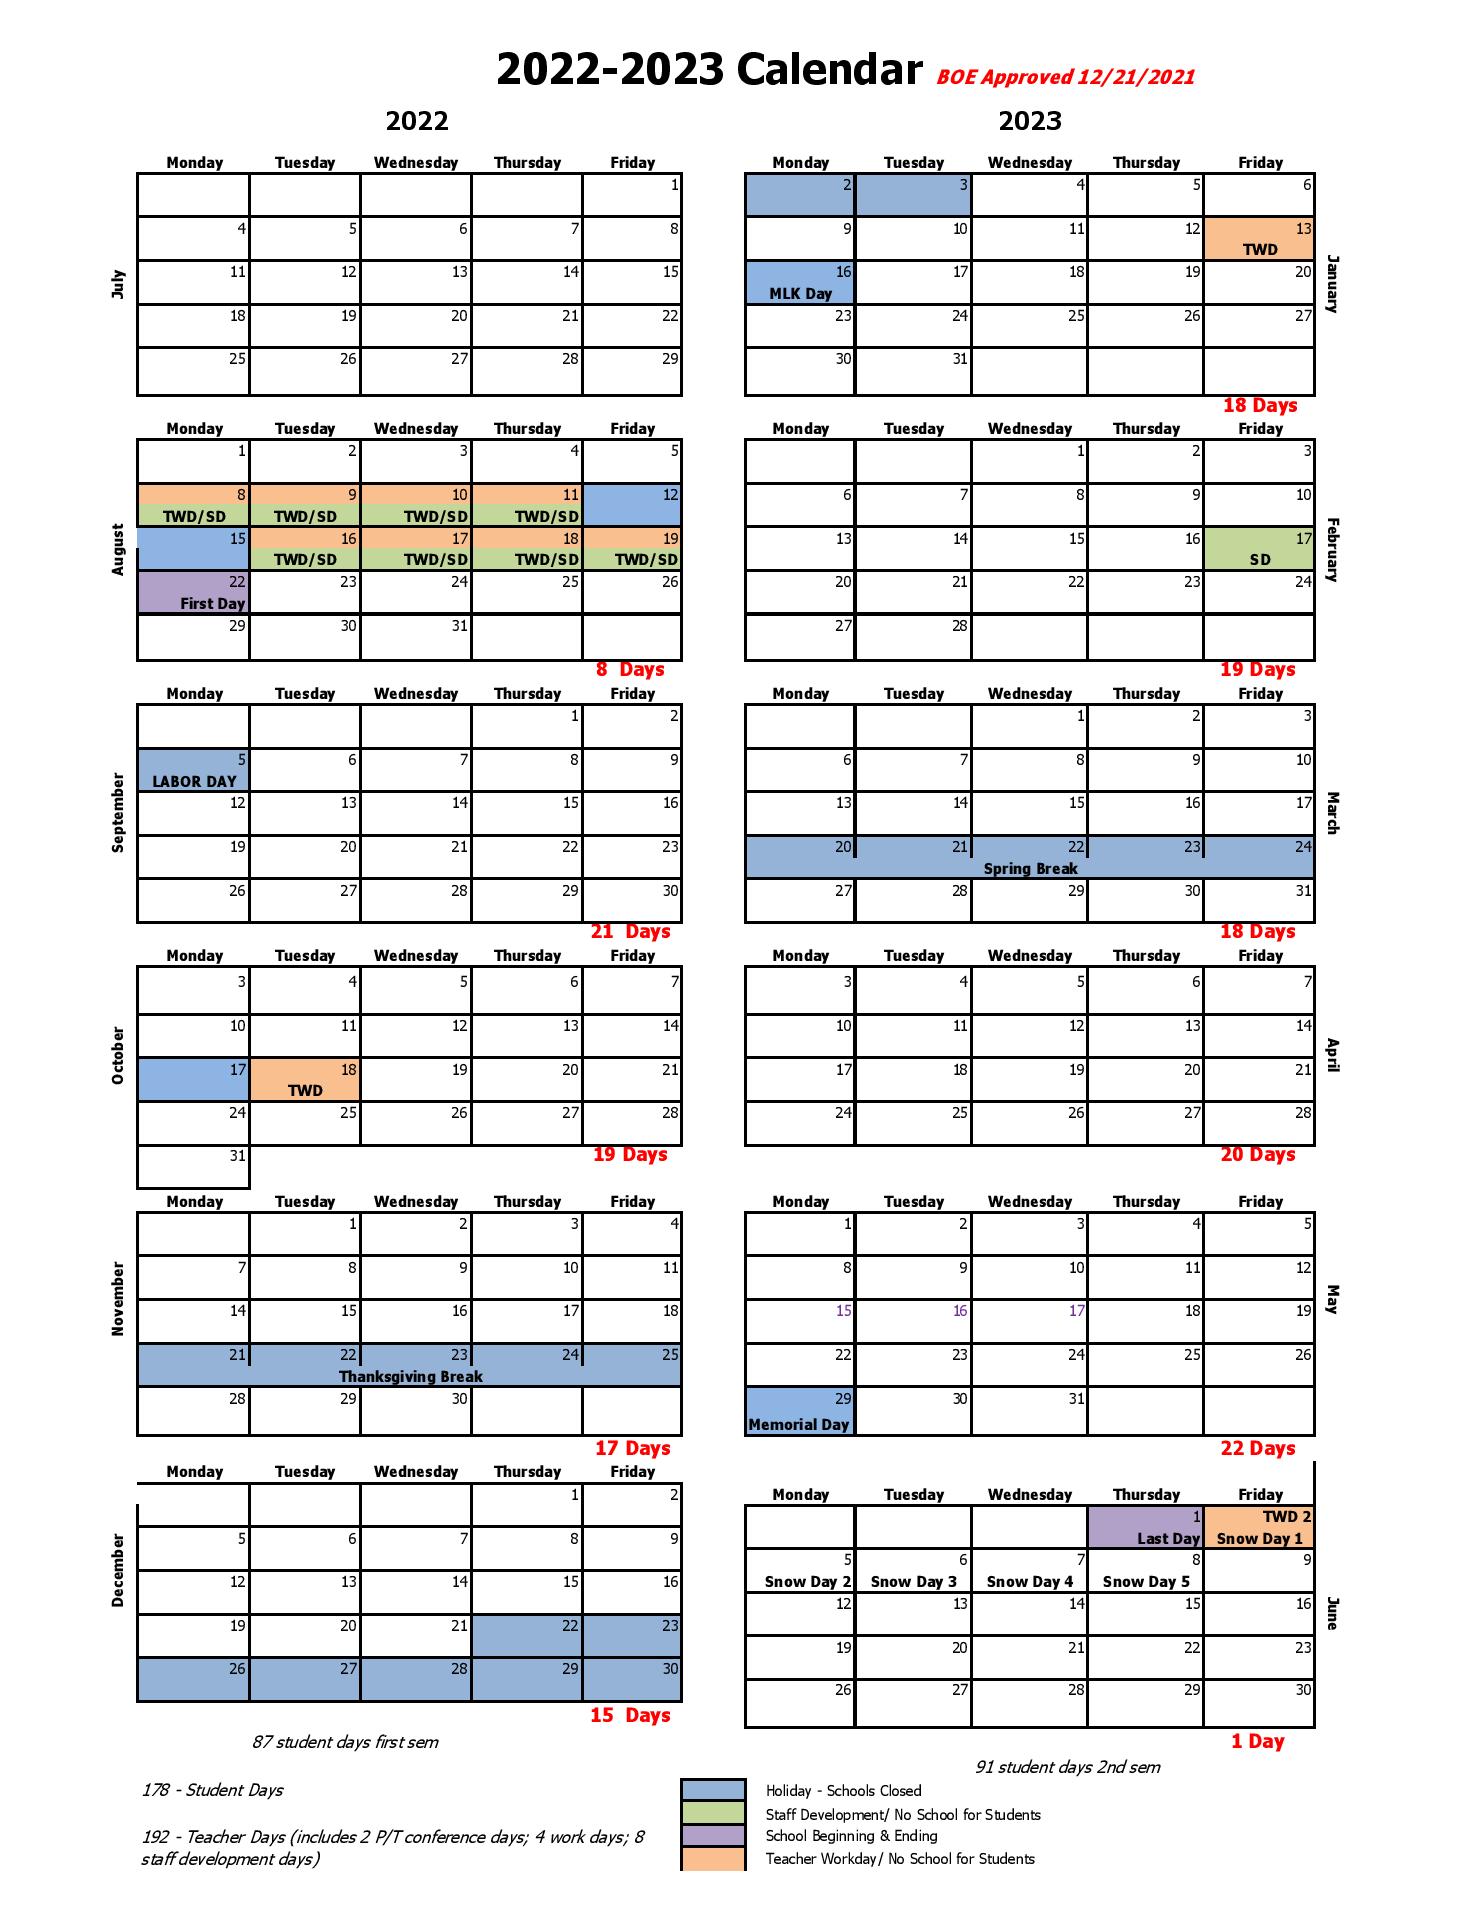 Bentonville Public Schools Calendar 2022 2023 In PDF Public Holidays